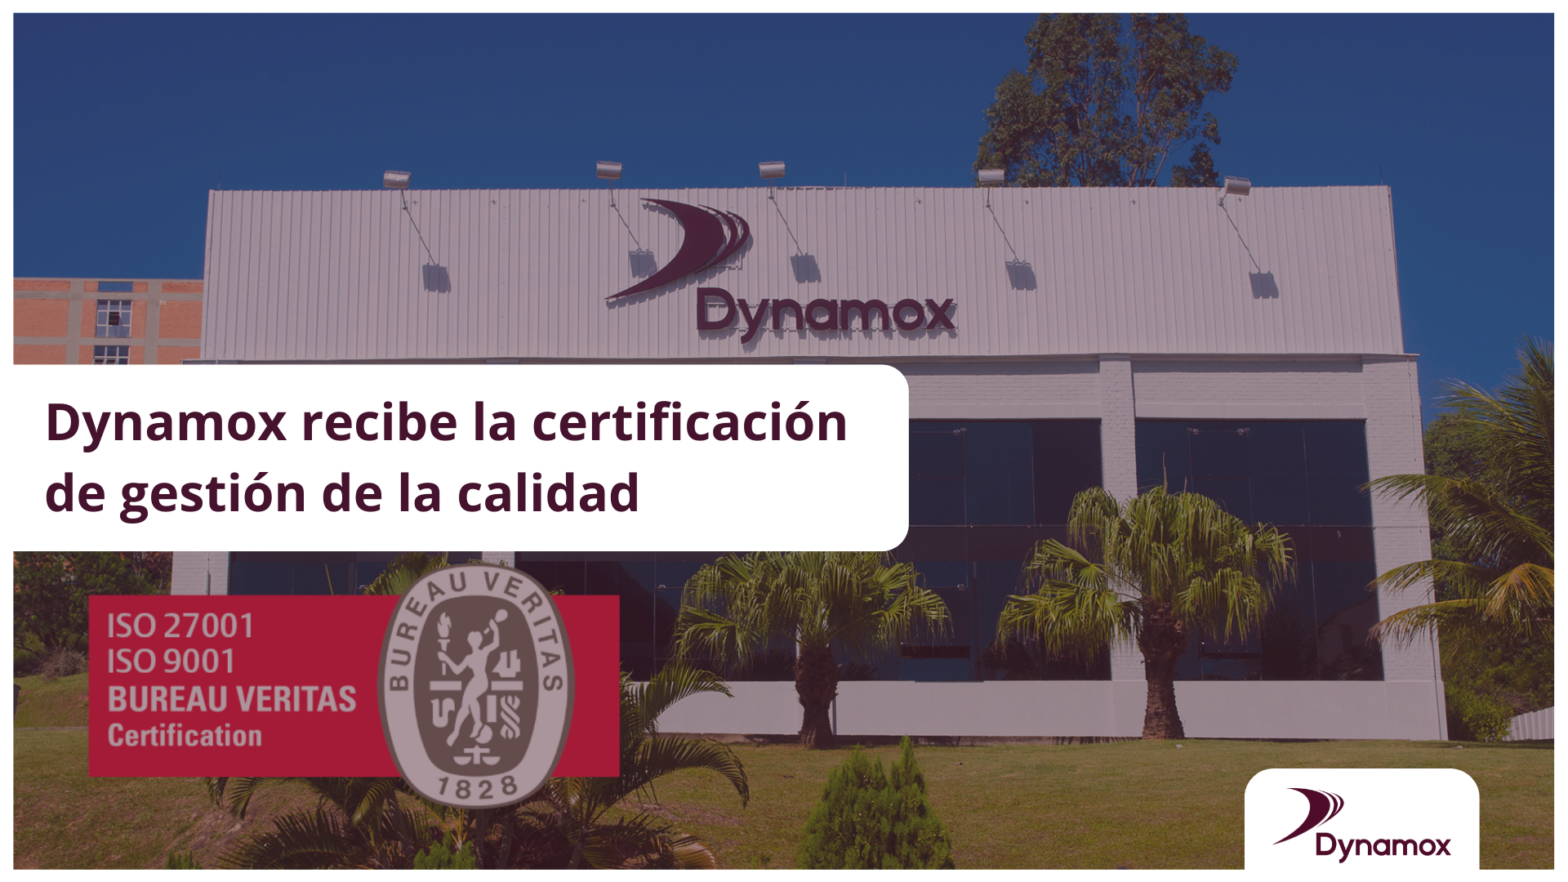 Dynamox recibe la certificación de gestión de la calidad